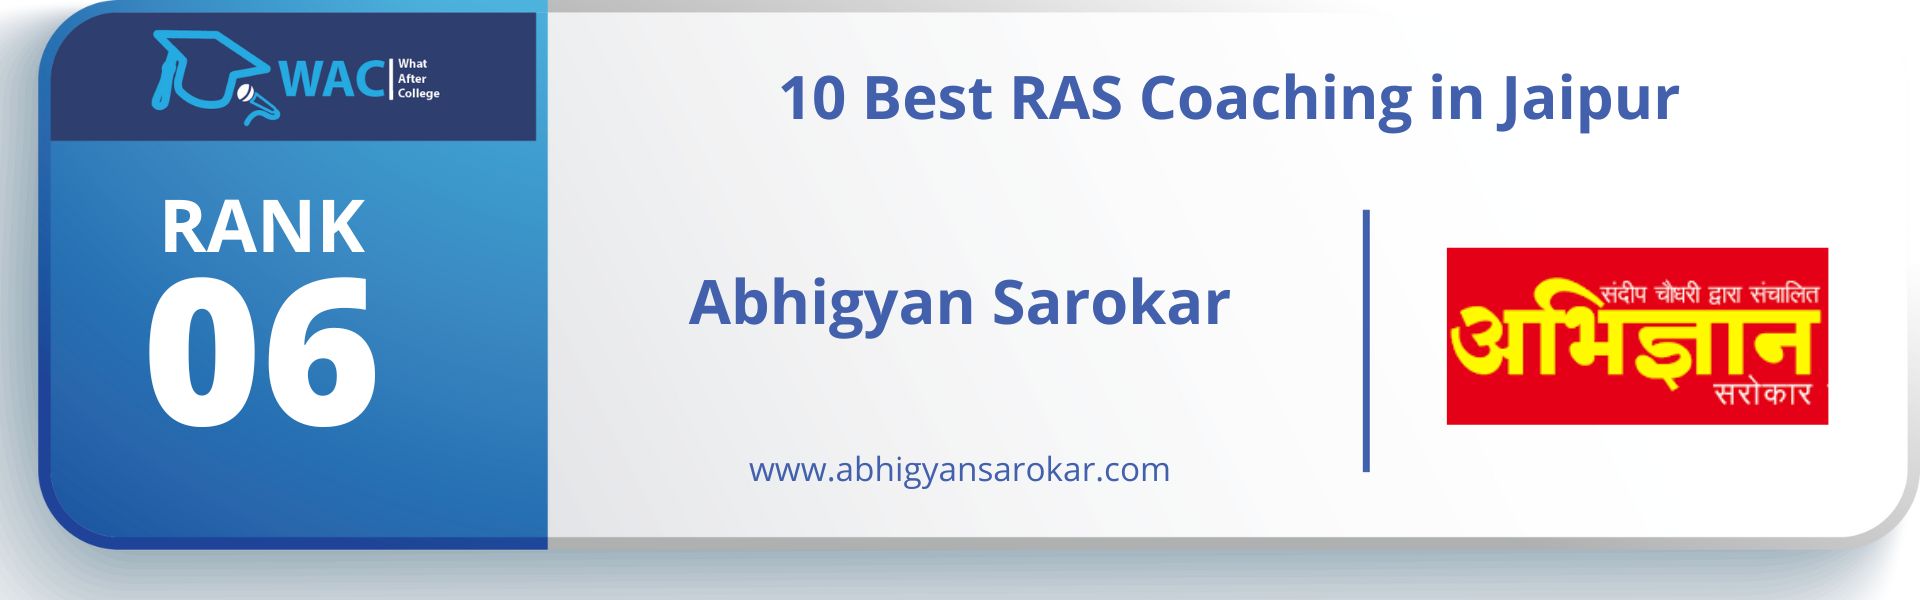 RAS coaching in Jaipur